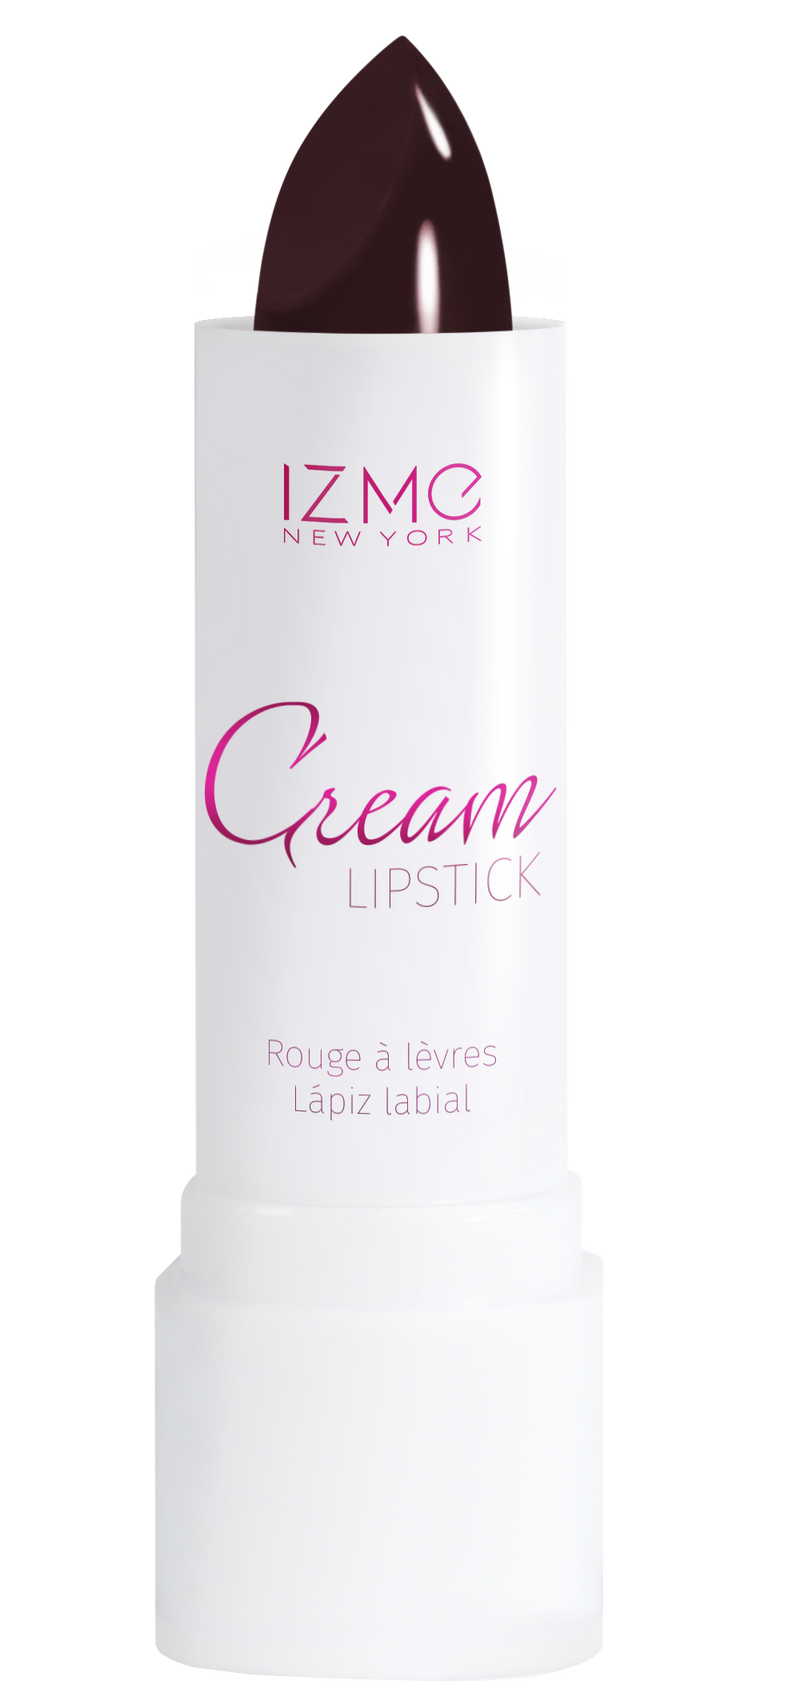 IZME New York Cream Lipstick – Dark Wine – 0.12 fl. Oz / 3.5 gm